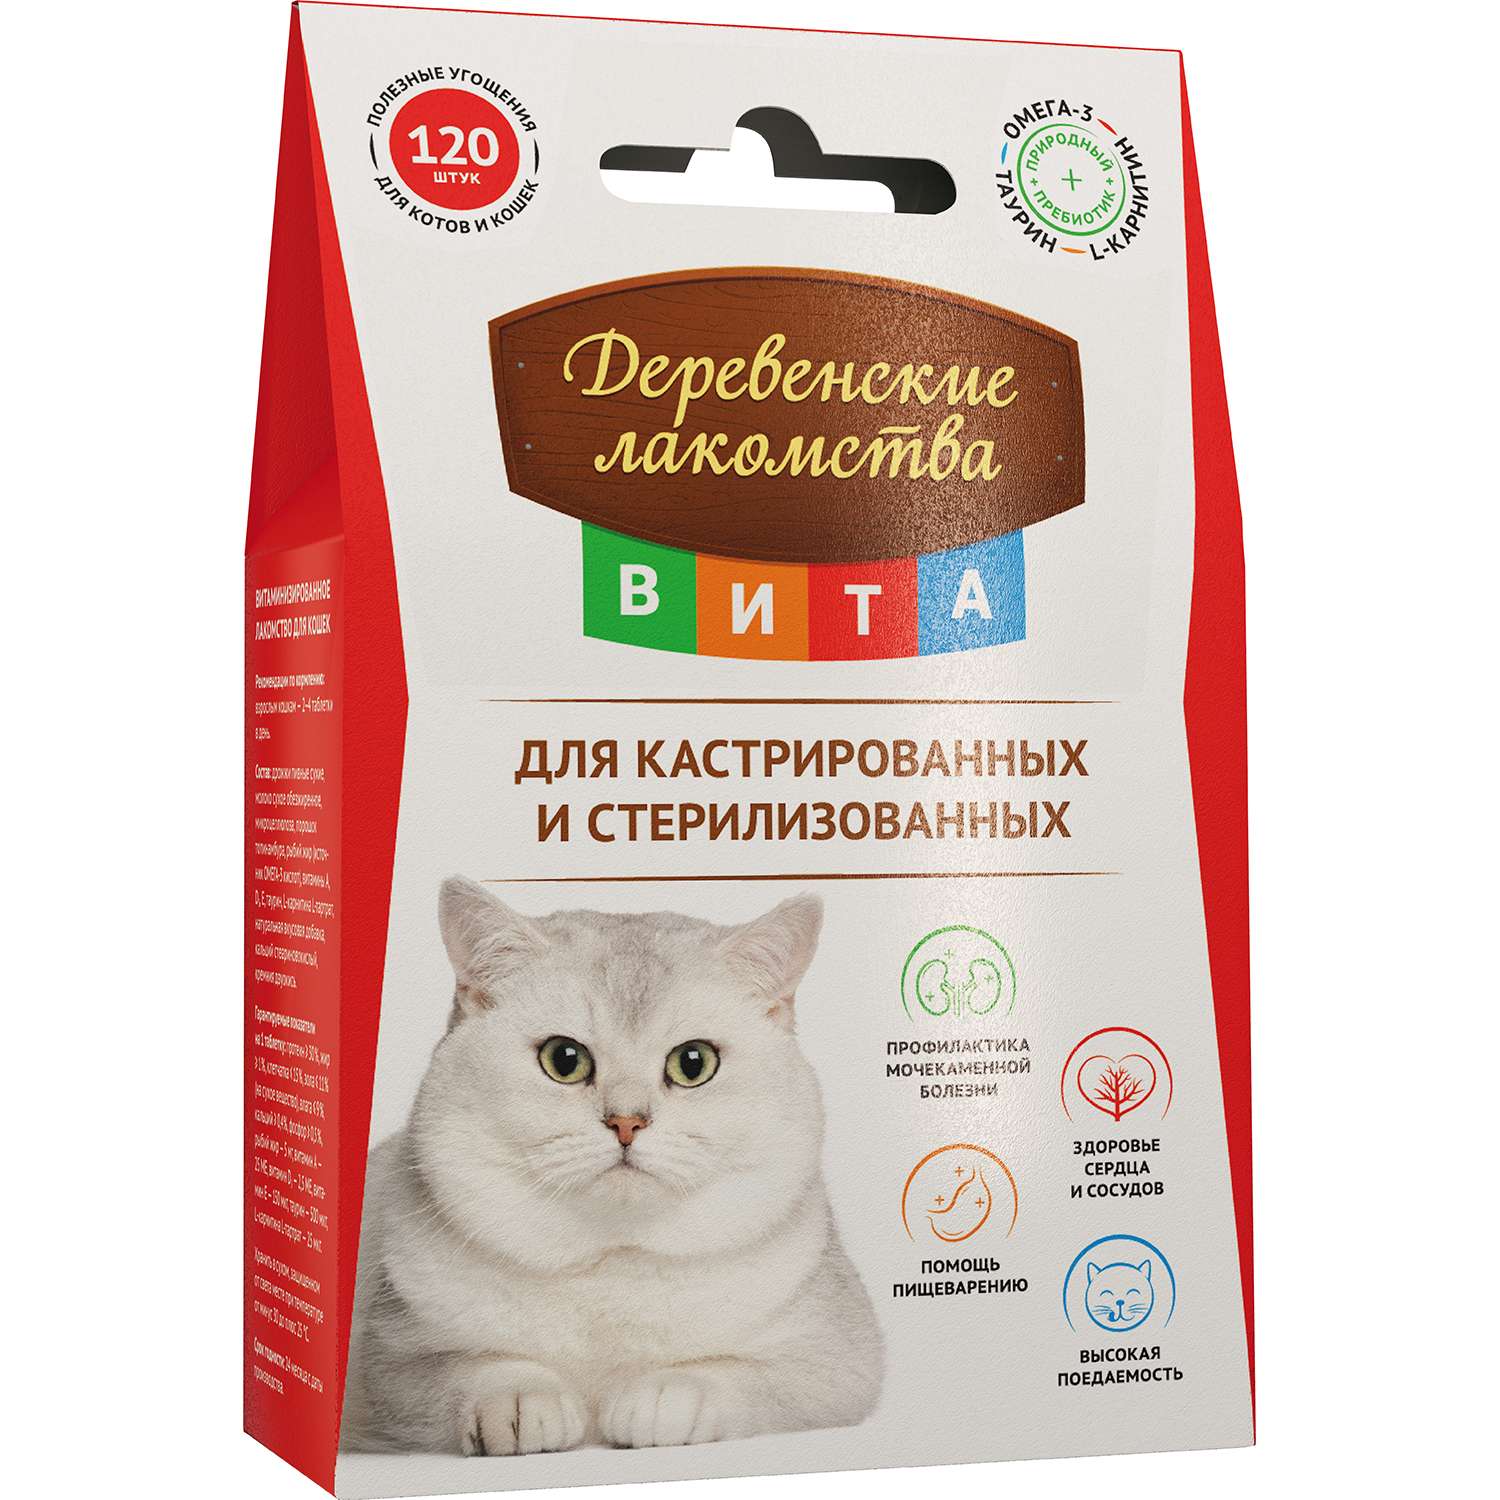 Лакомство для кошек Деревенские лакомства кастрированных и стерилизованных витаминизированное 120шт - фото 1